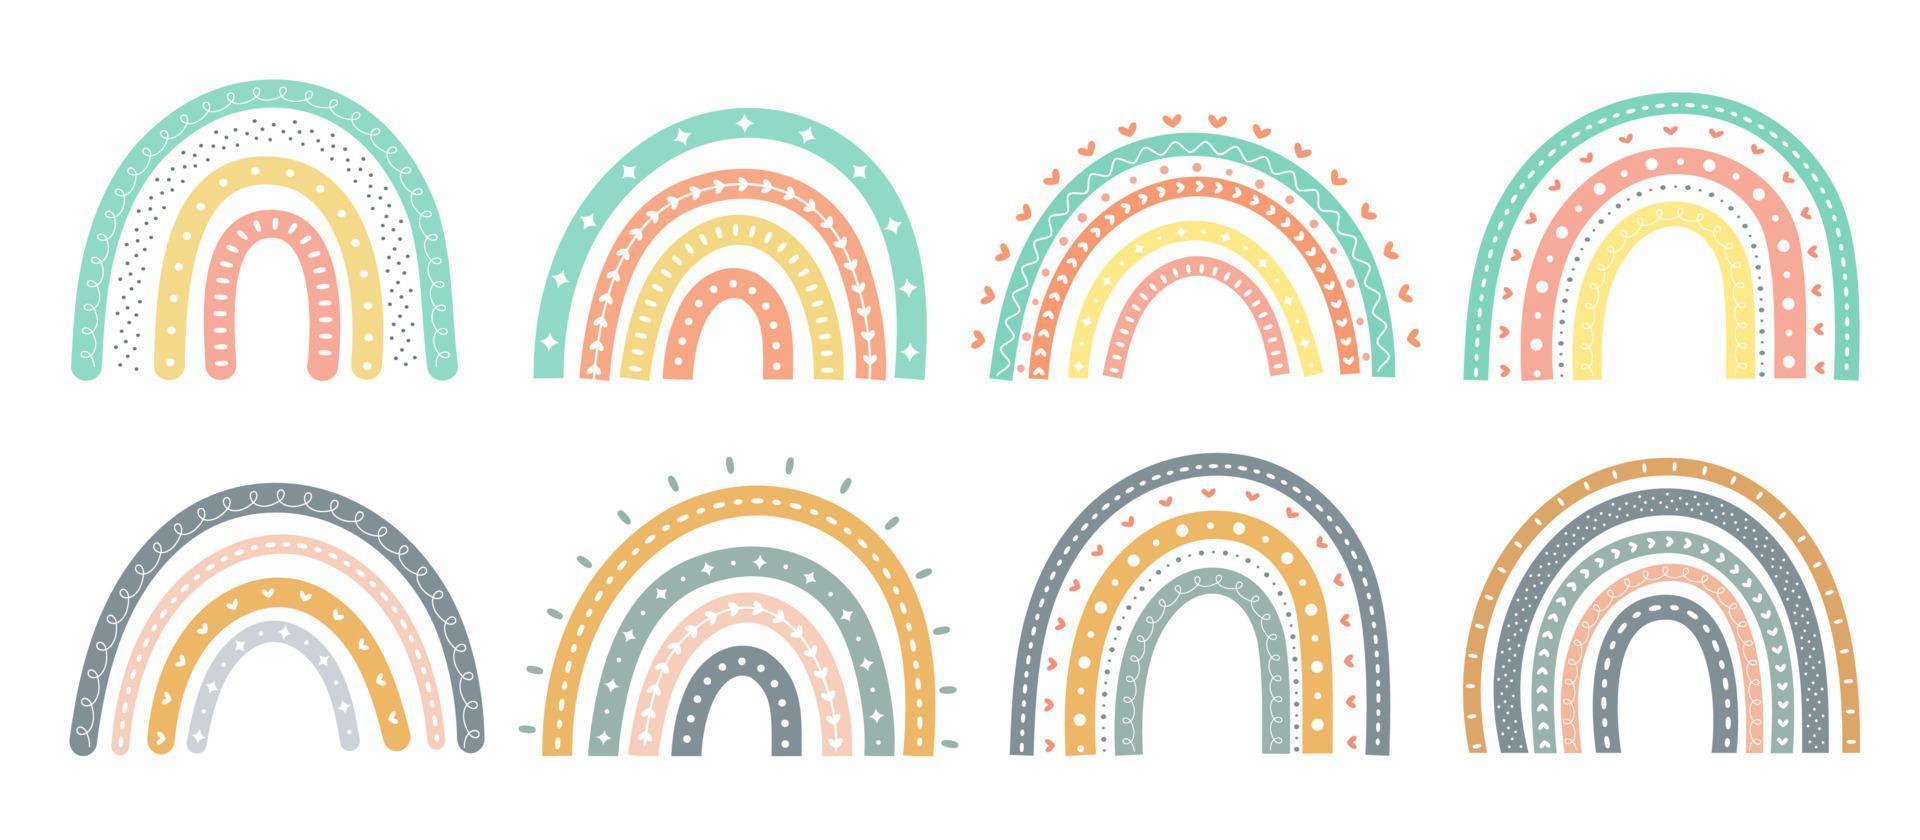 Elementos lindos de la tarjeta de felicitación del arco iris escandinavo aislados en un fondo blanco vector